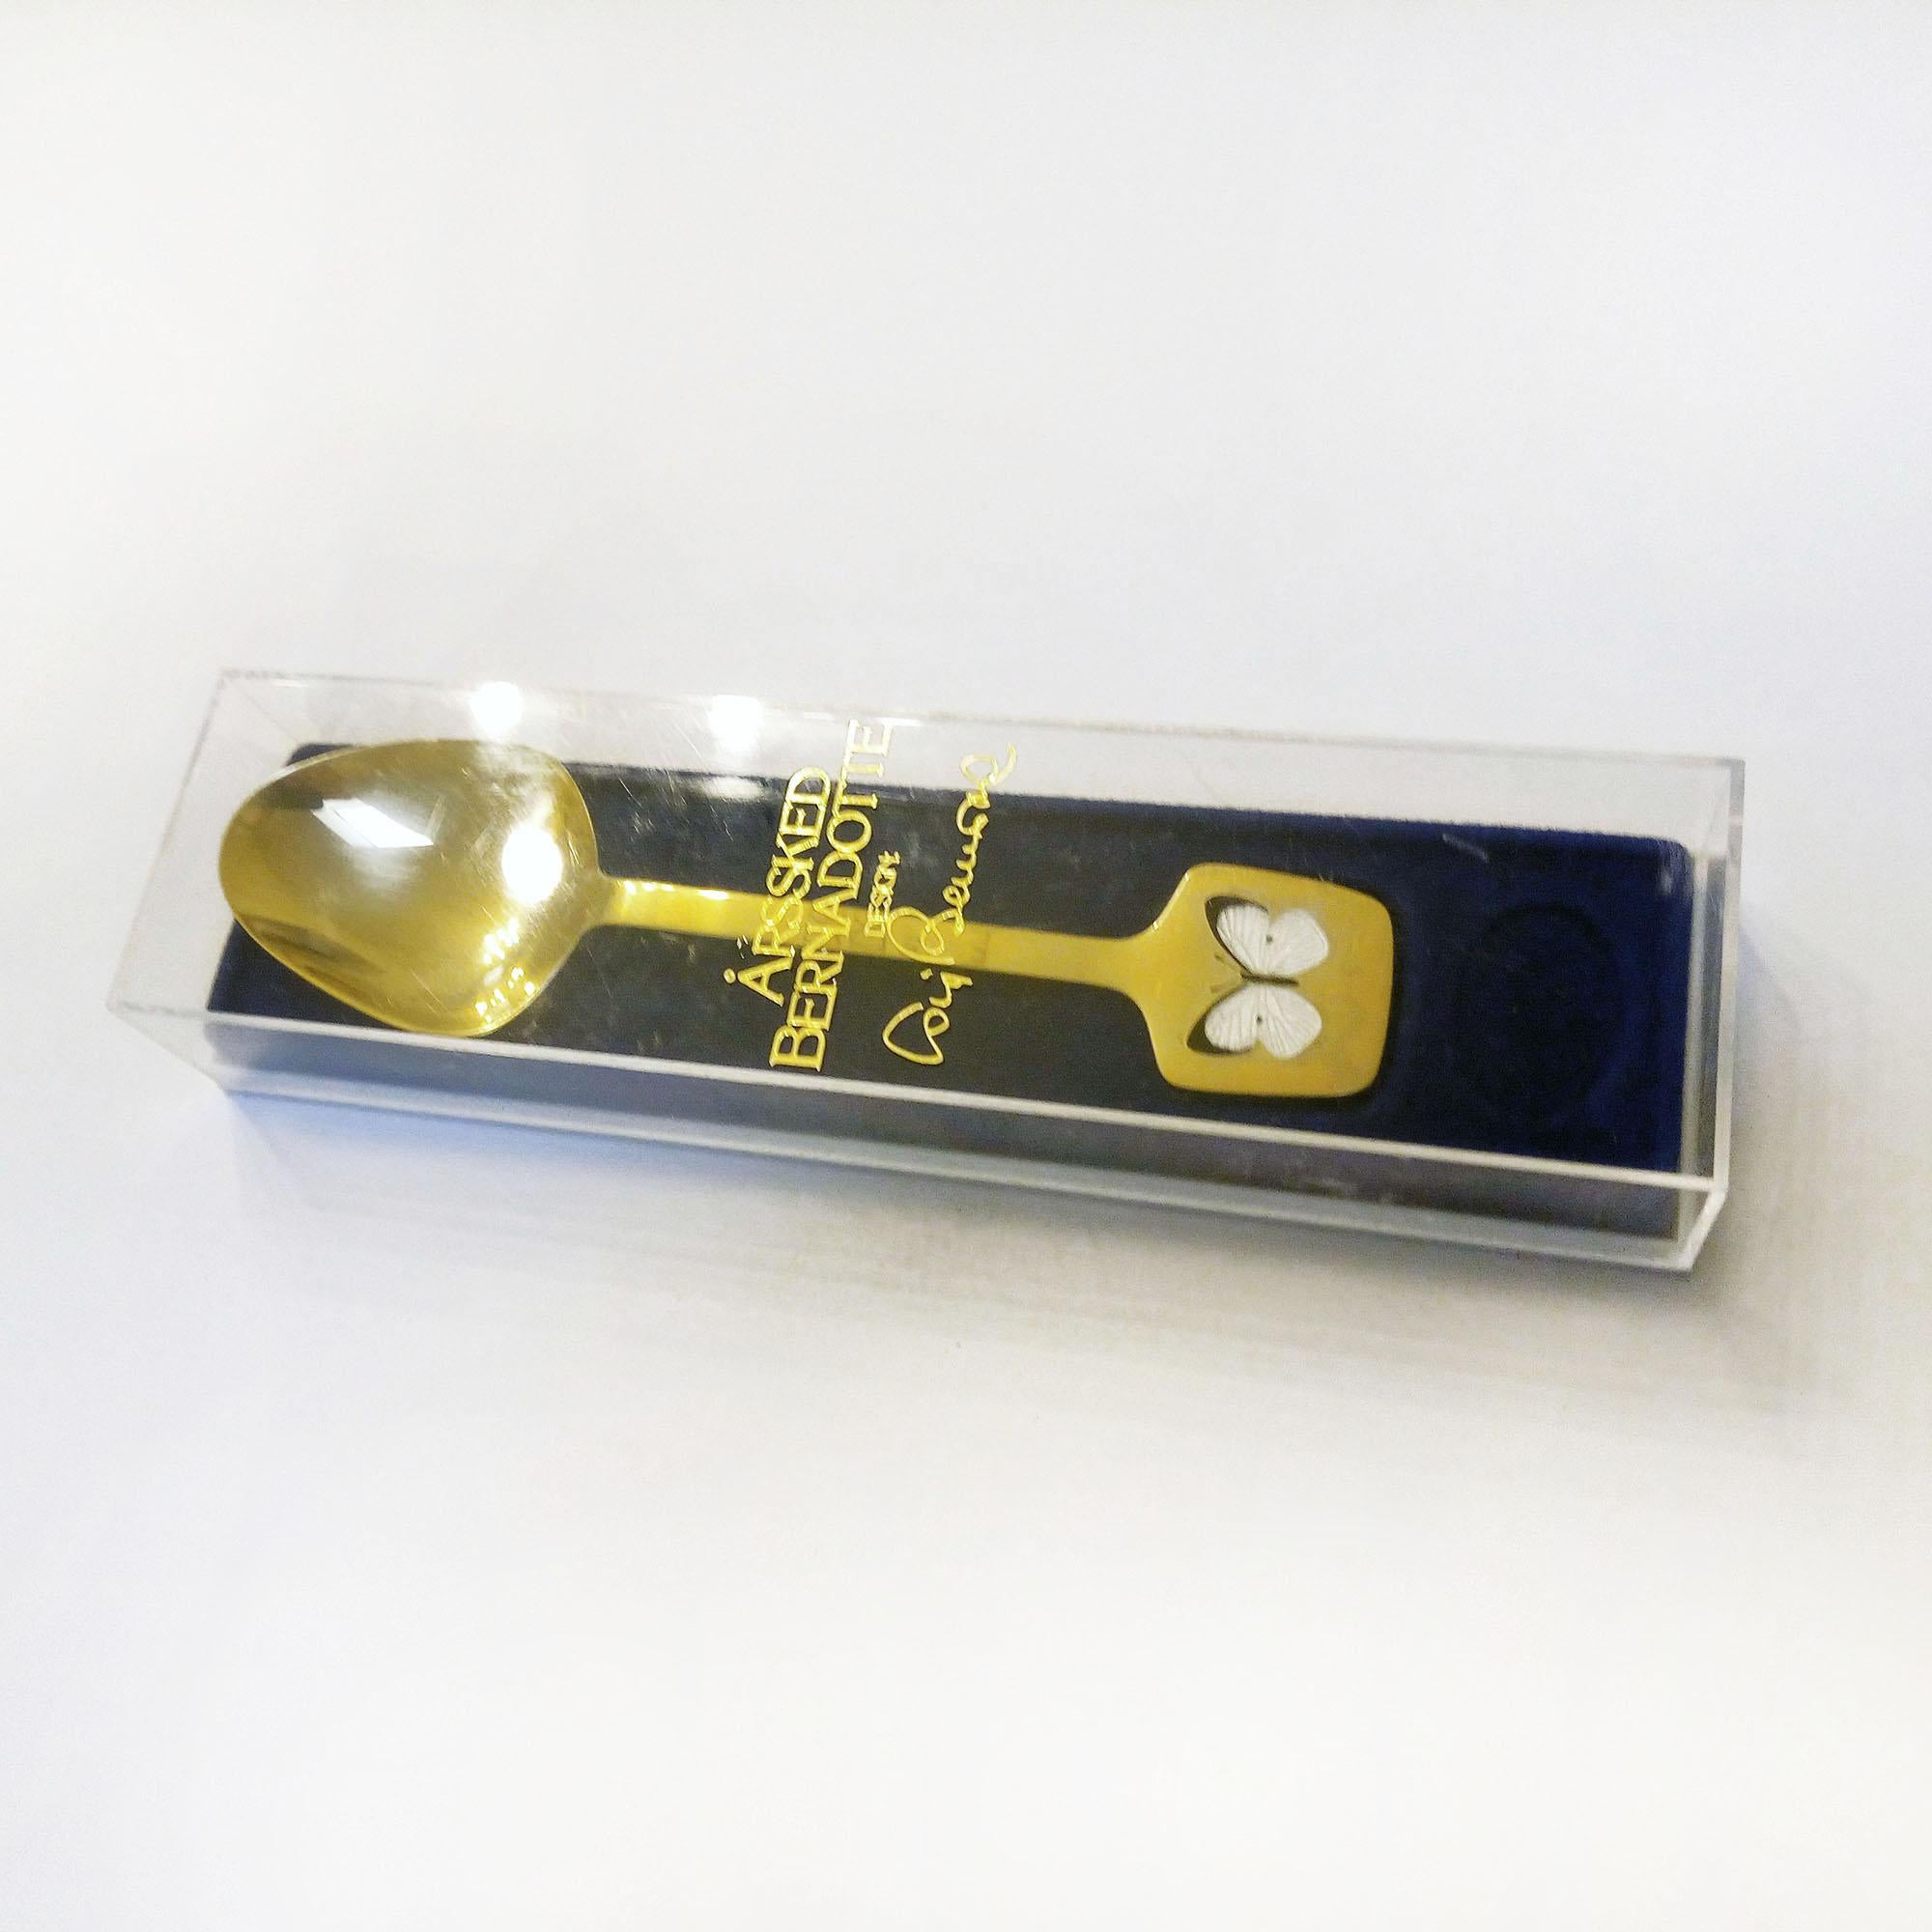 Jahreslöffel, 1978, Design Bernadotte, in Originalverpackung.
Vergoldetes Sterlingsilber mit emailliertem Schmetterlingsdekor.
Jeweils auf der Rückseite 